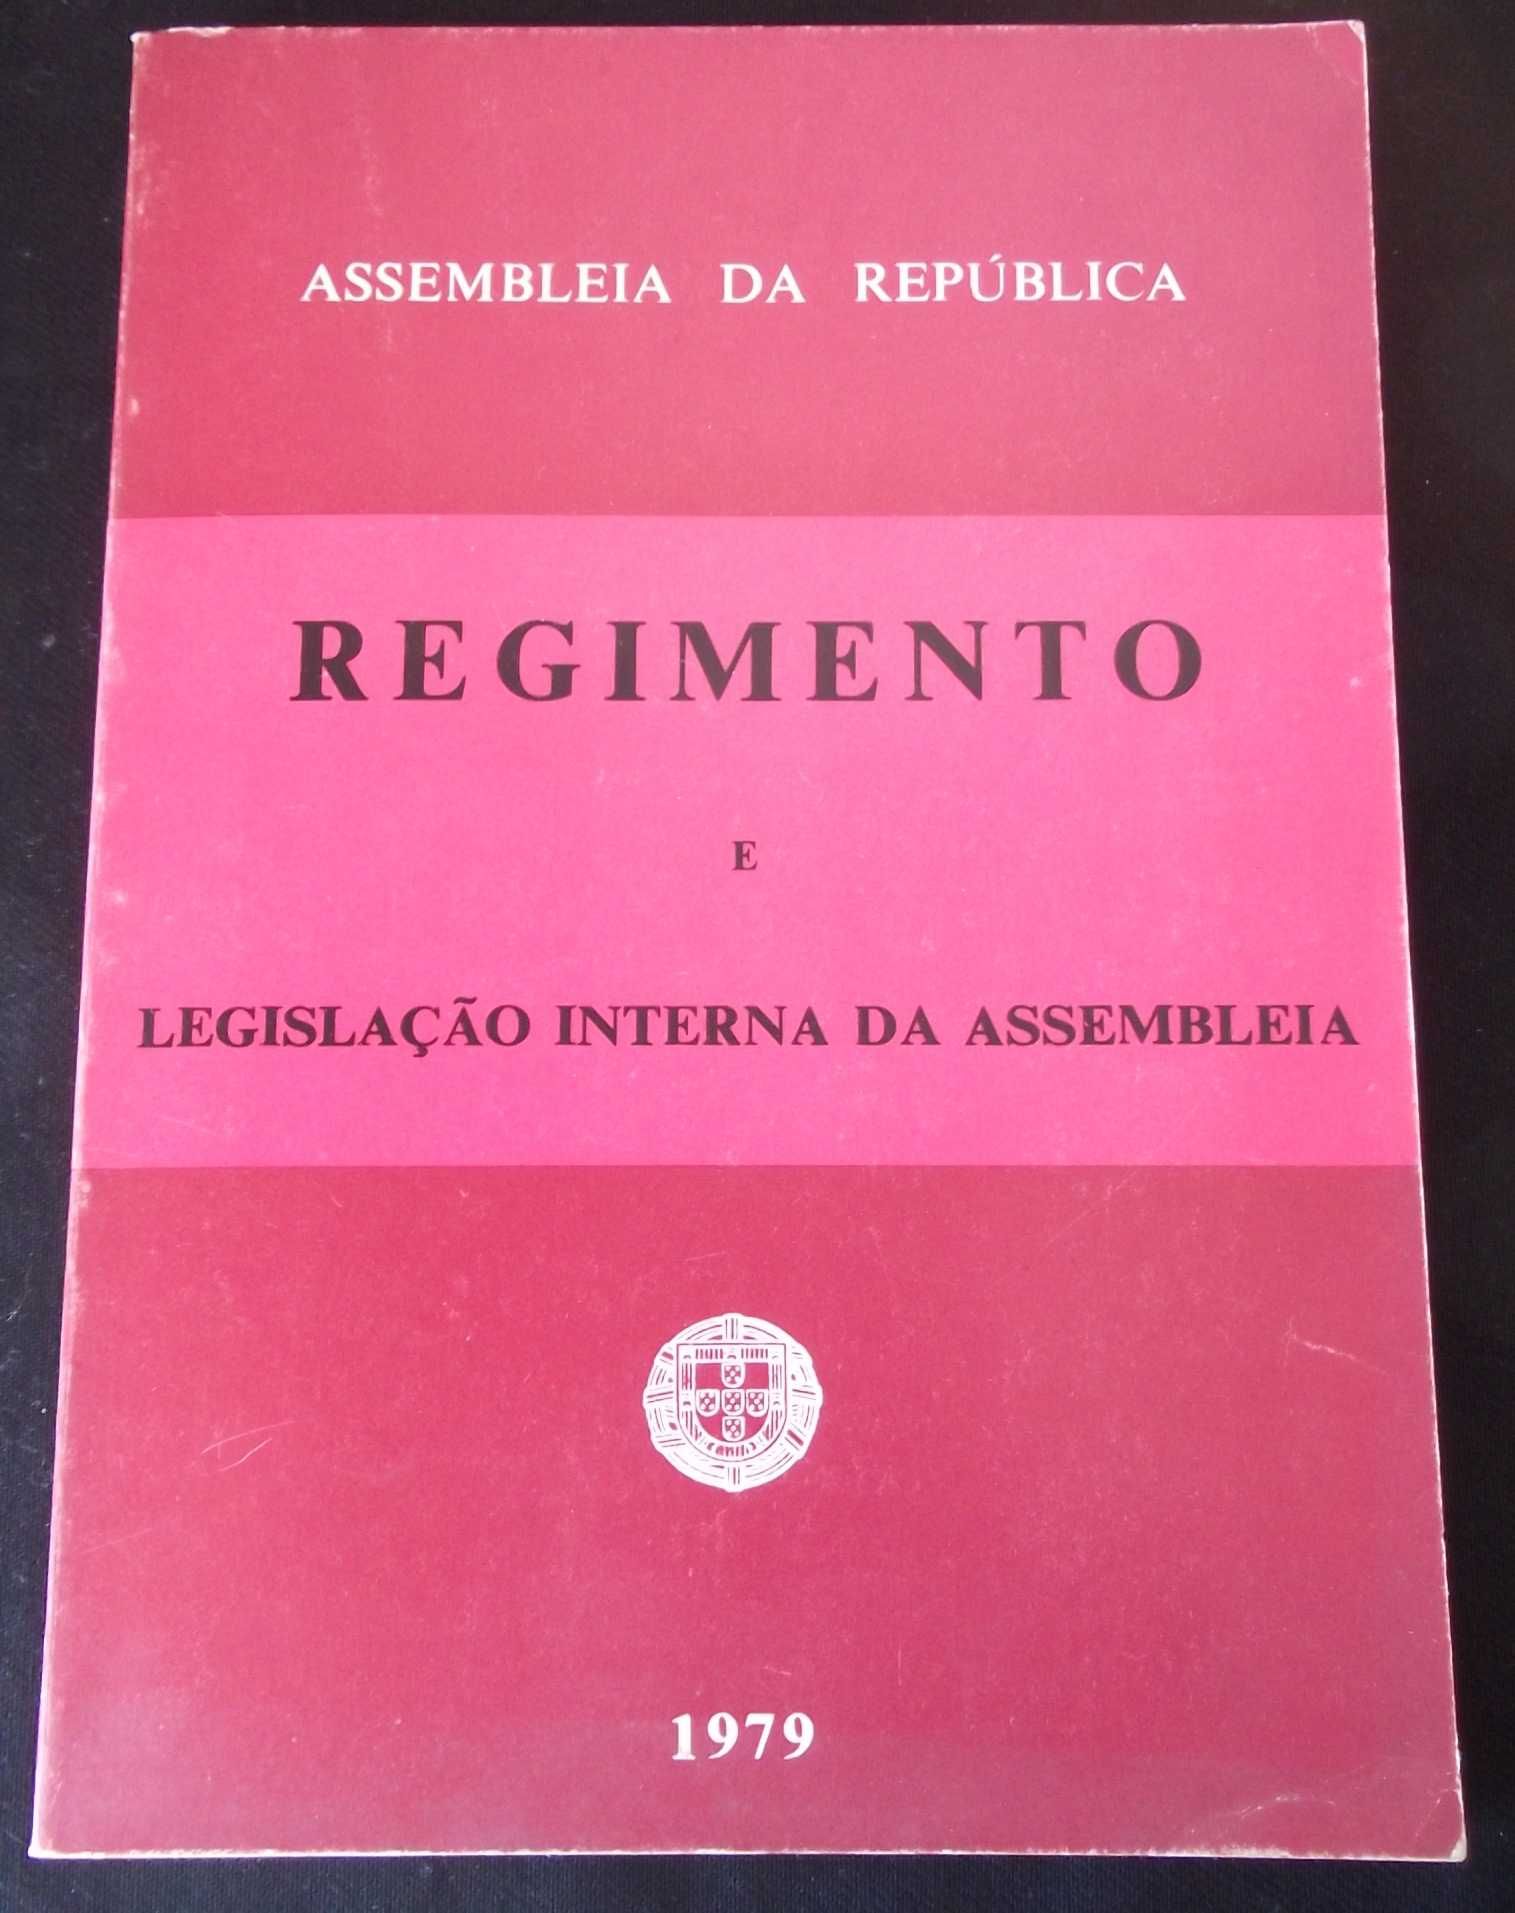 Livro Regimento e legislação interna Assembleia República 1979